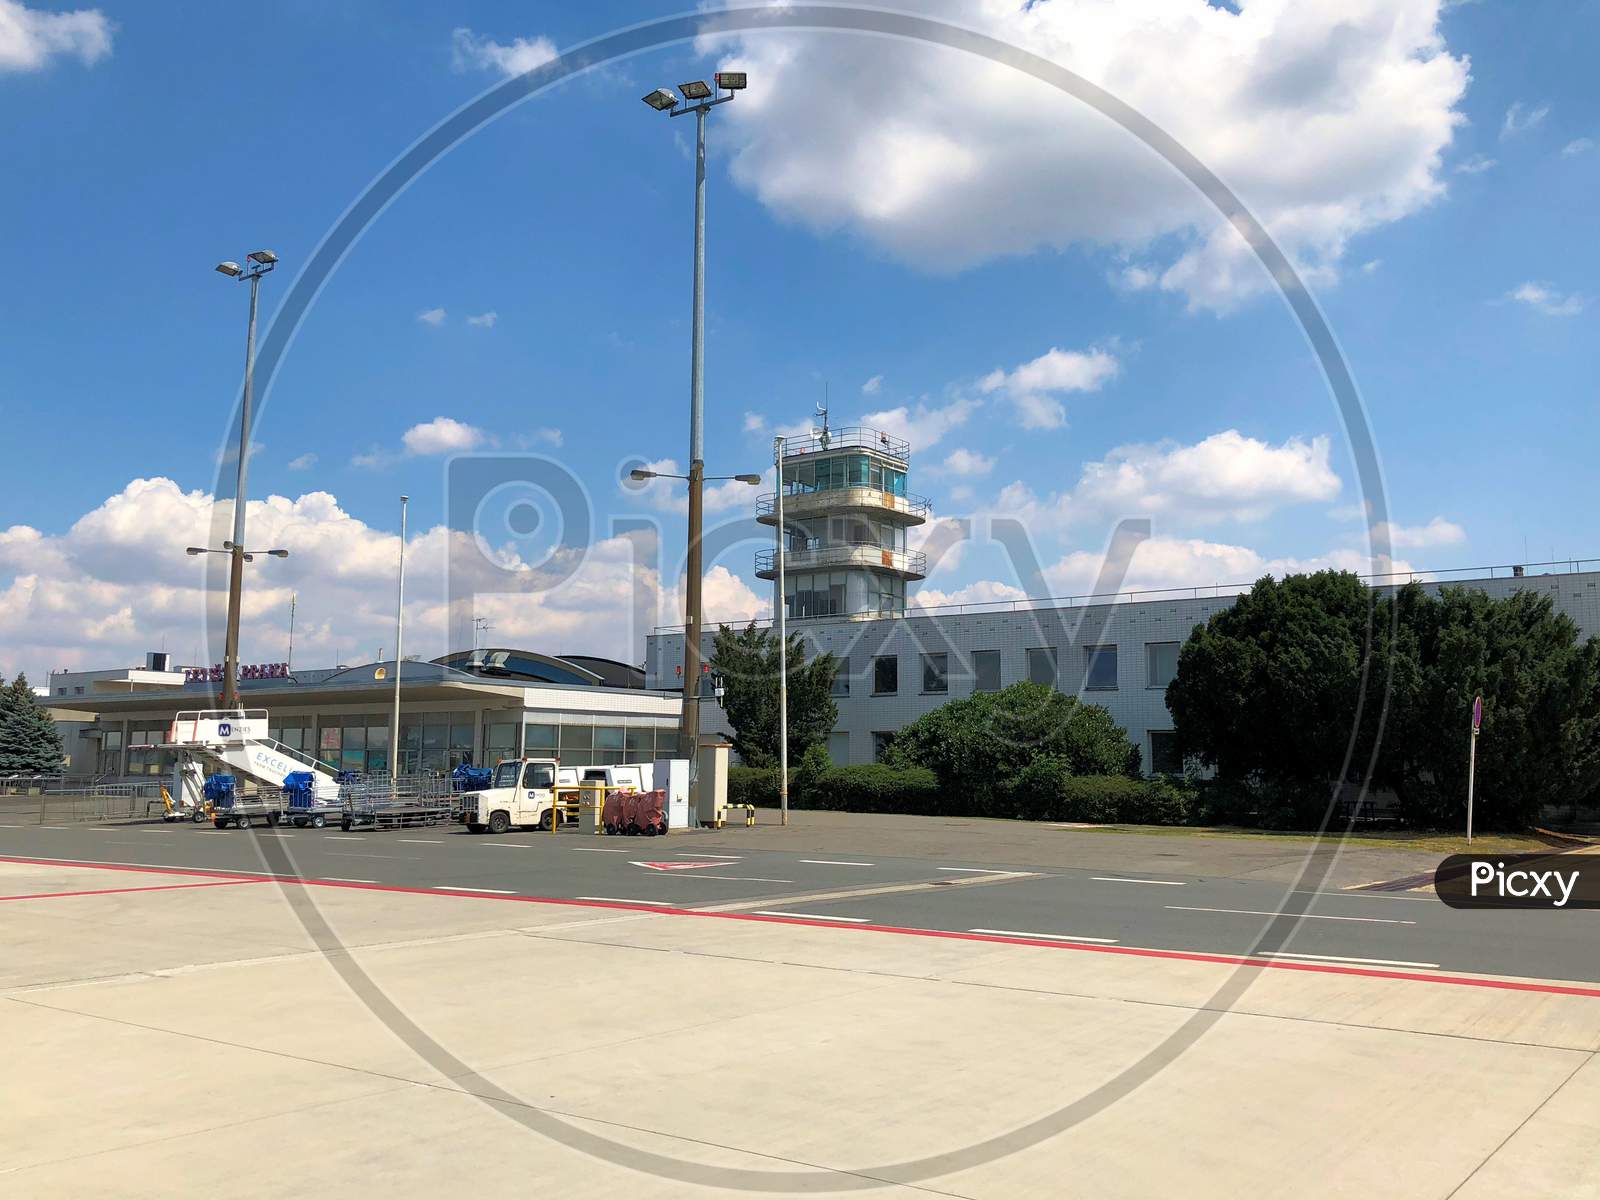 International Airport In Prague In Czech Republic 14.7.2018